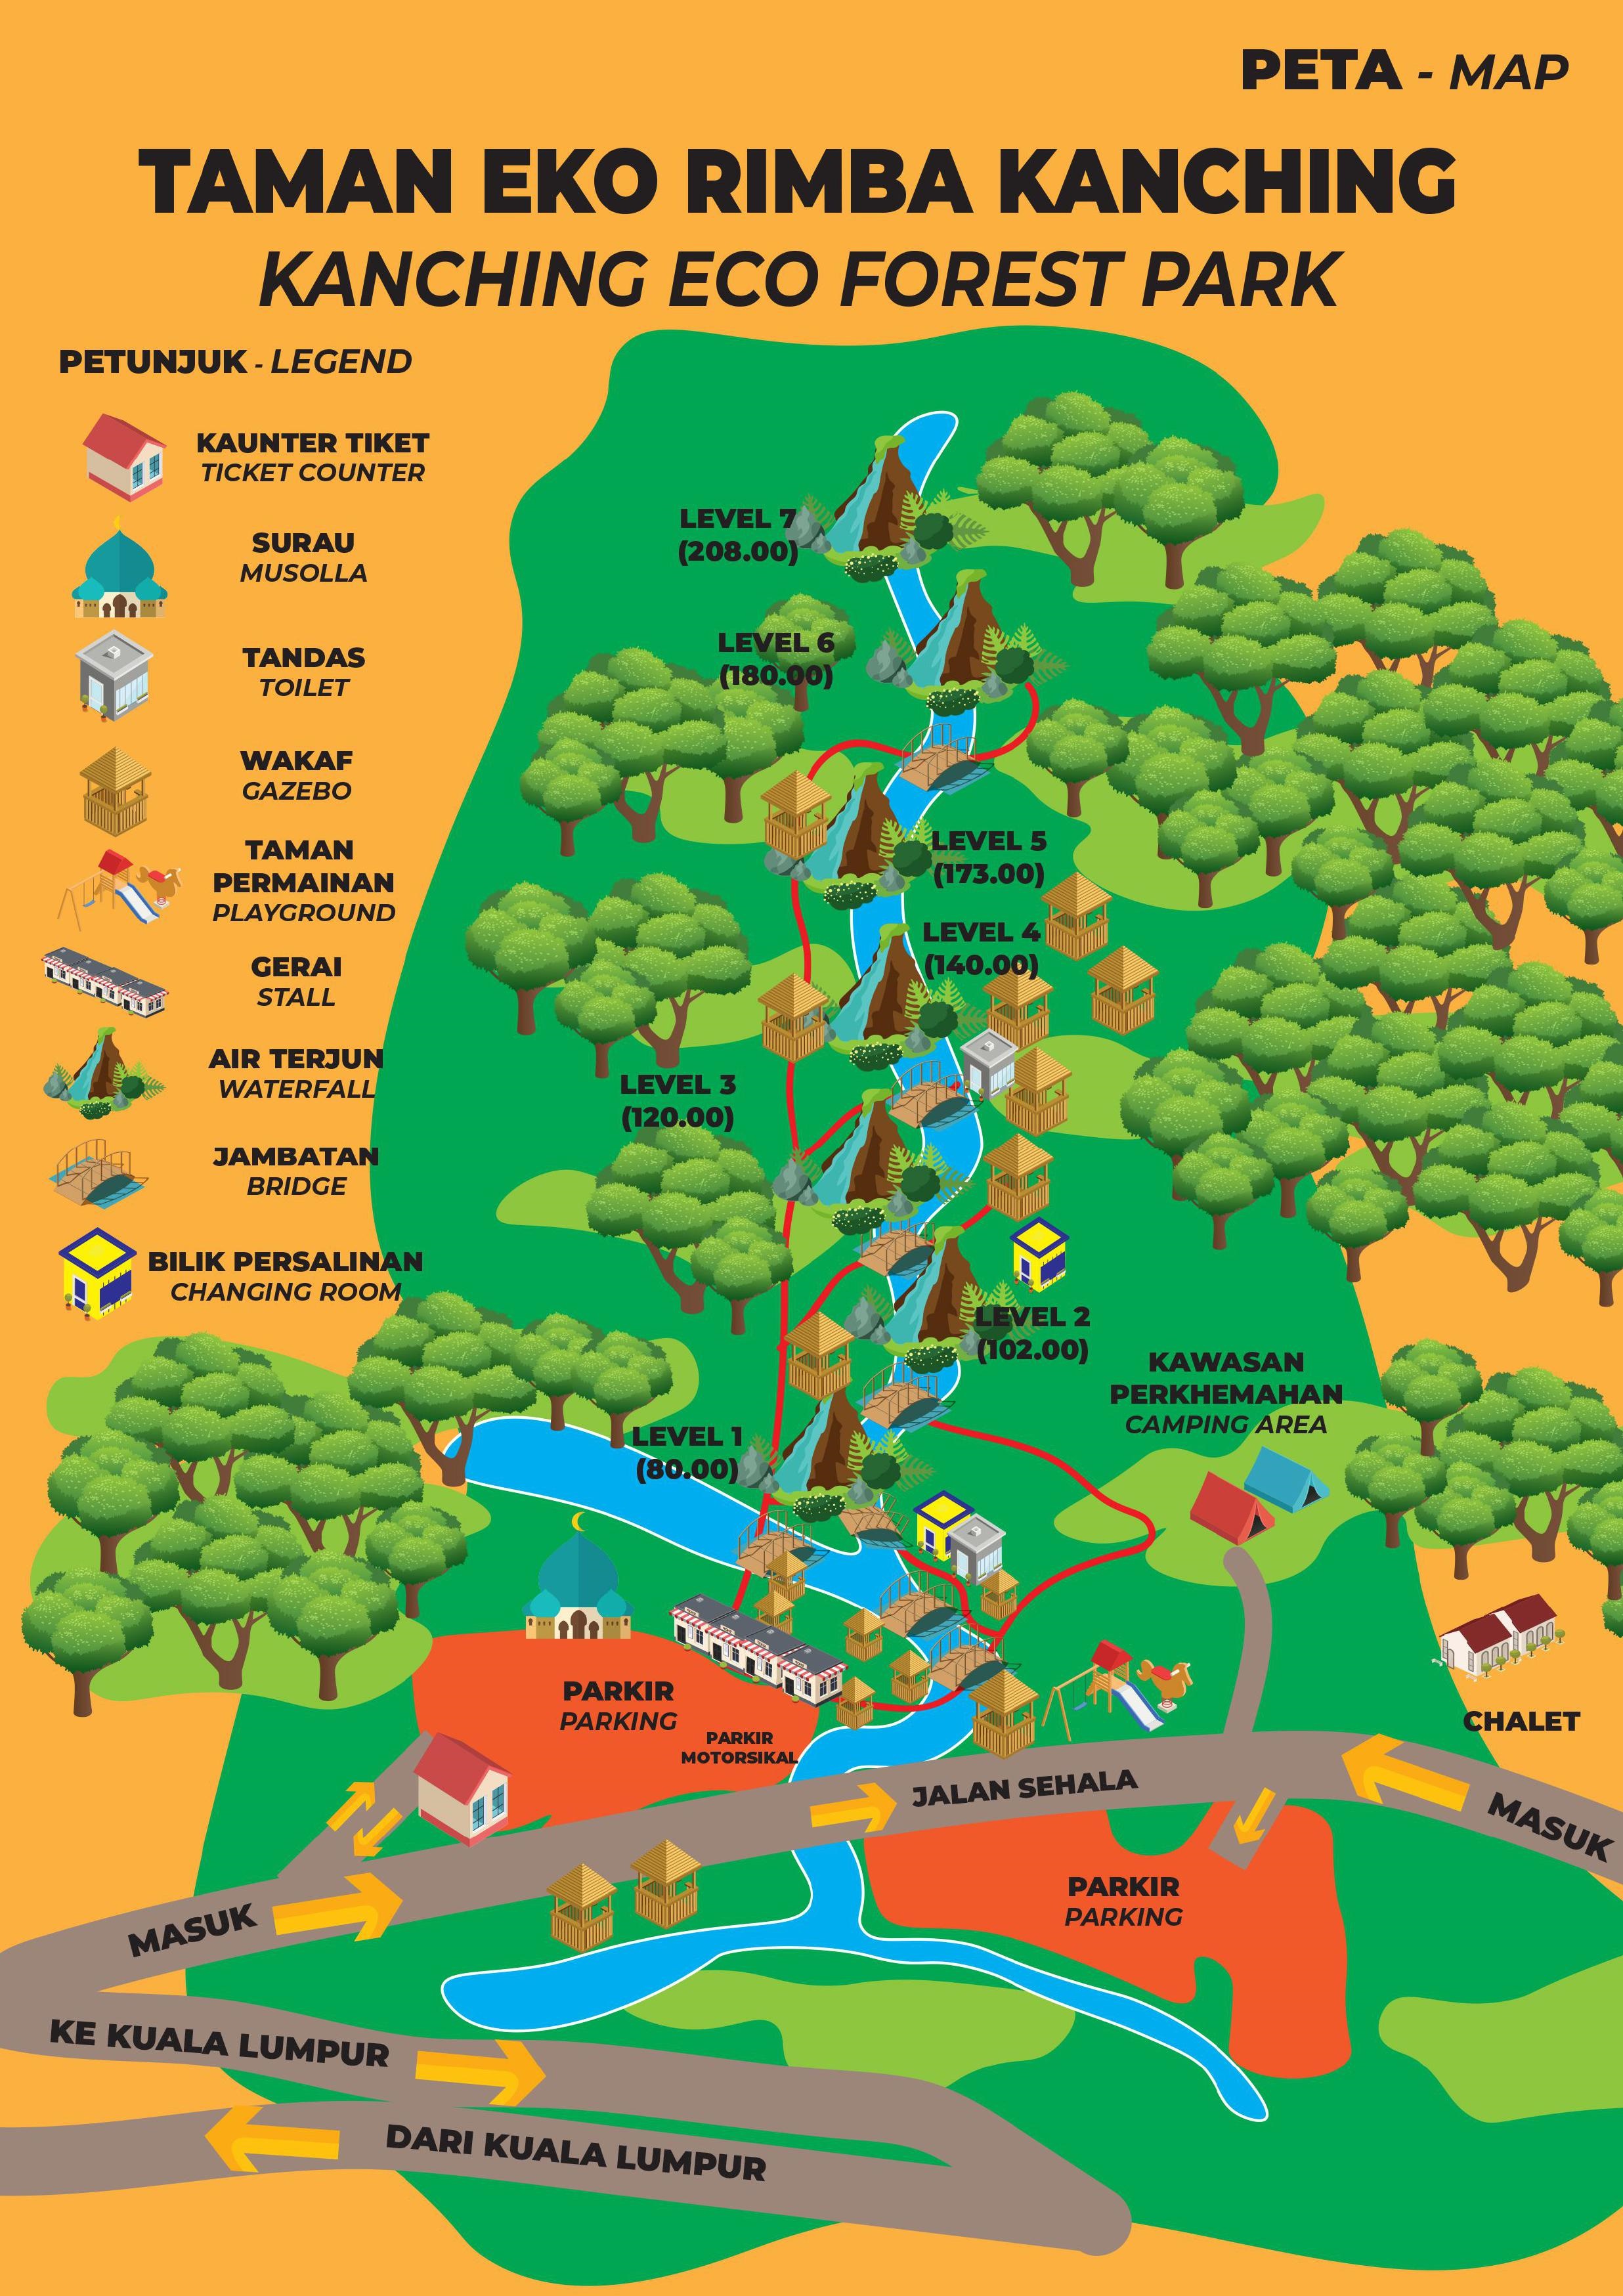 万挠康情生态公园的地图。-图取自selangor.travel官网-